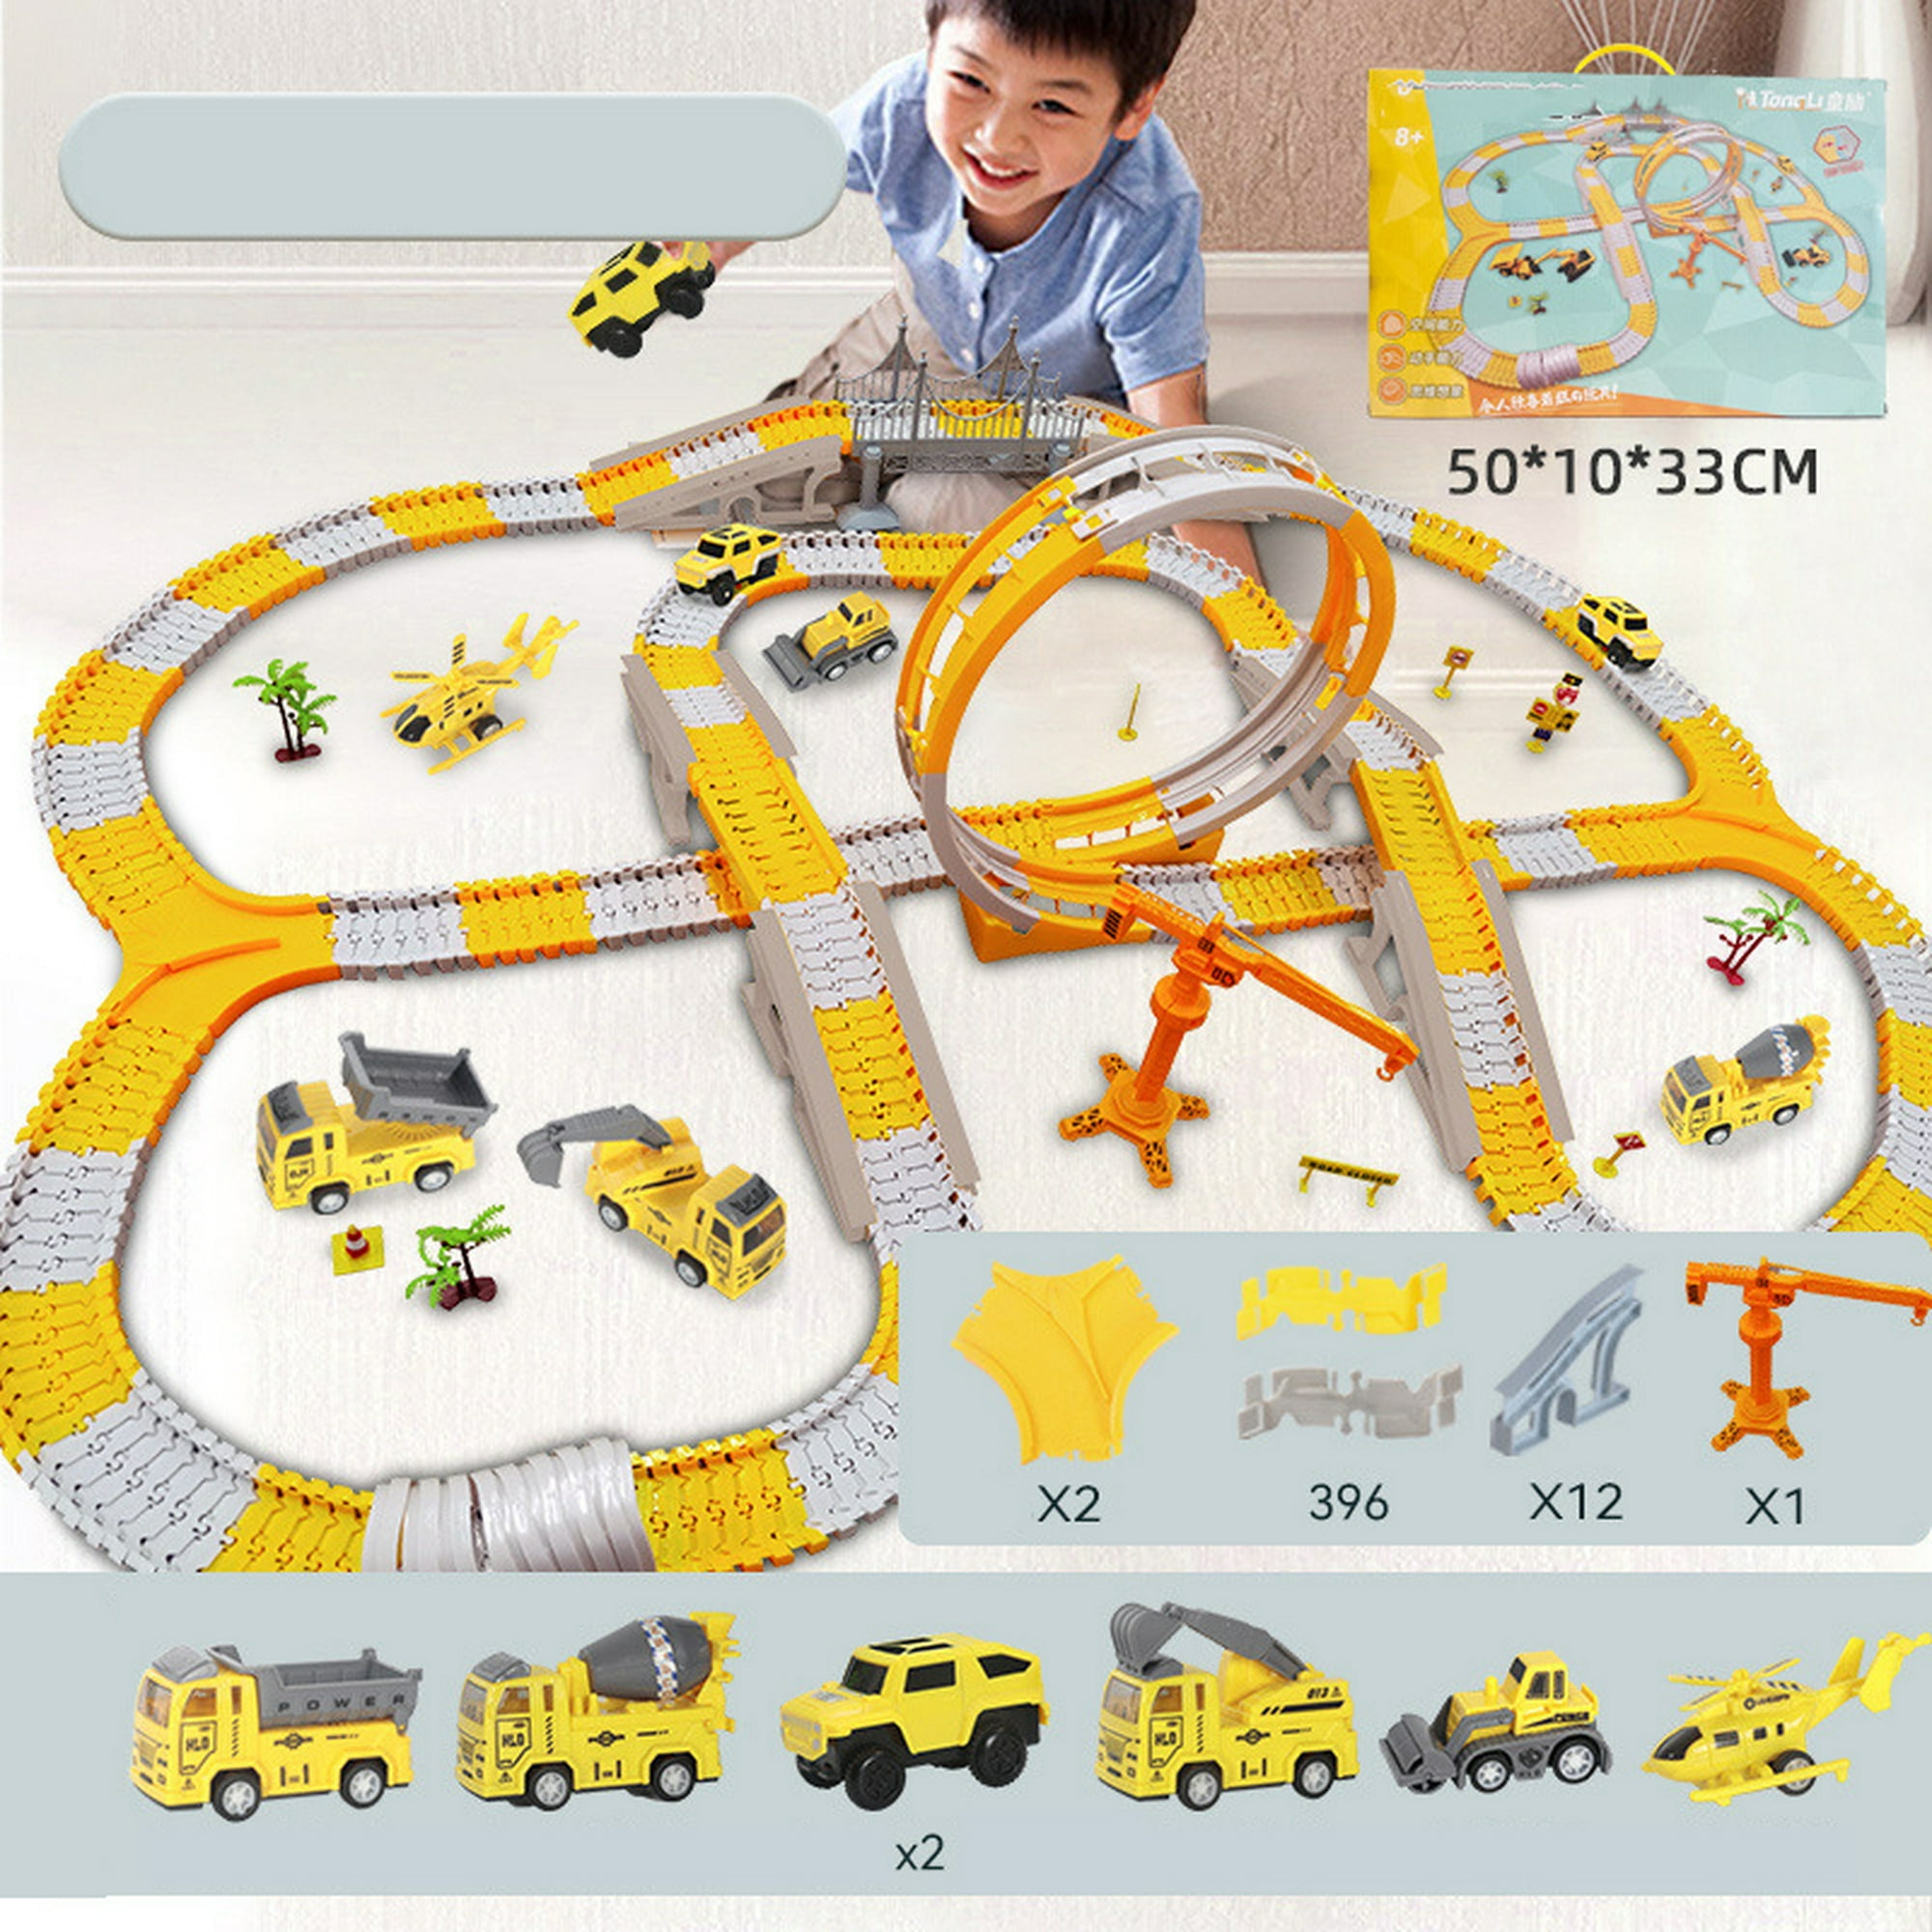 iHaHa Camiones de juguete Coche para niños pequeños de 1 2 3 4 5